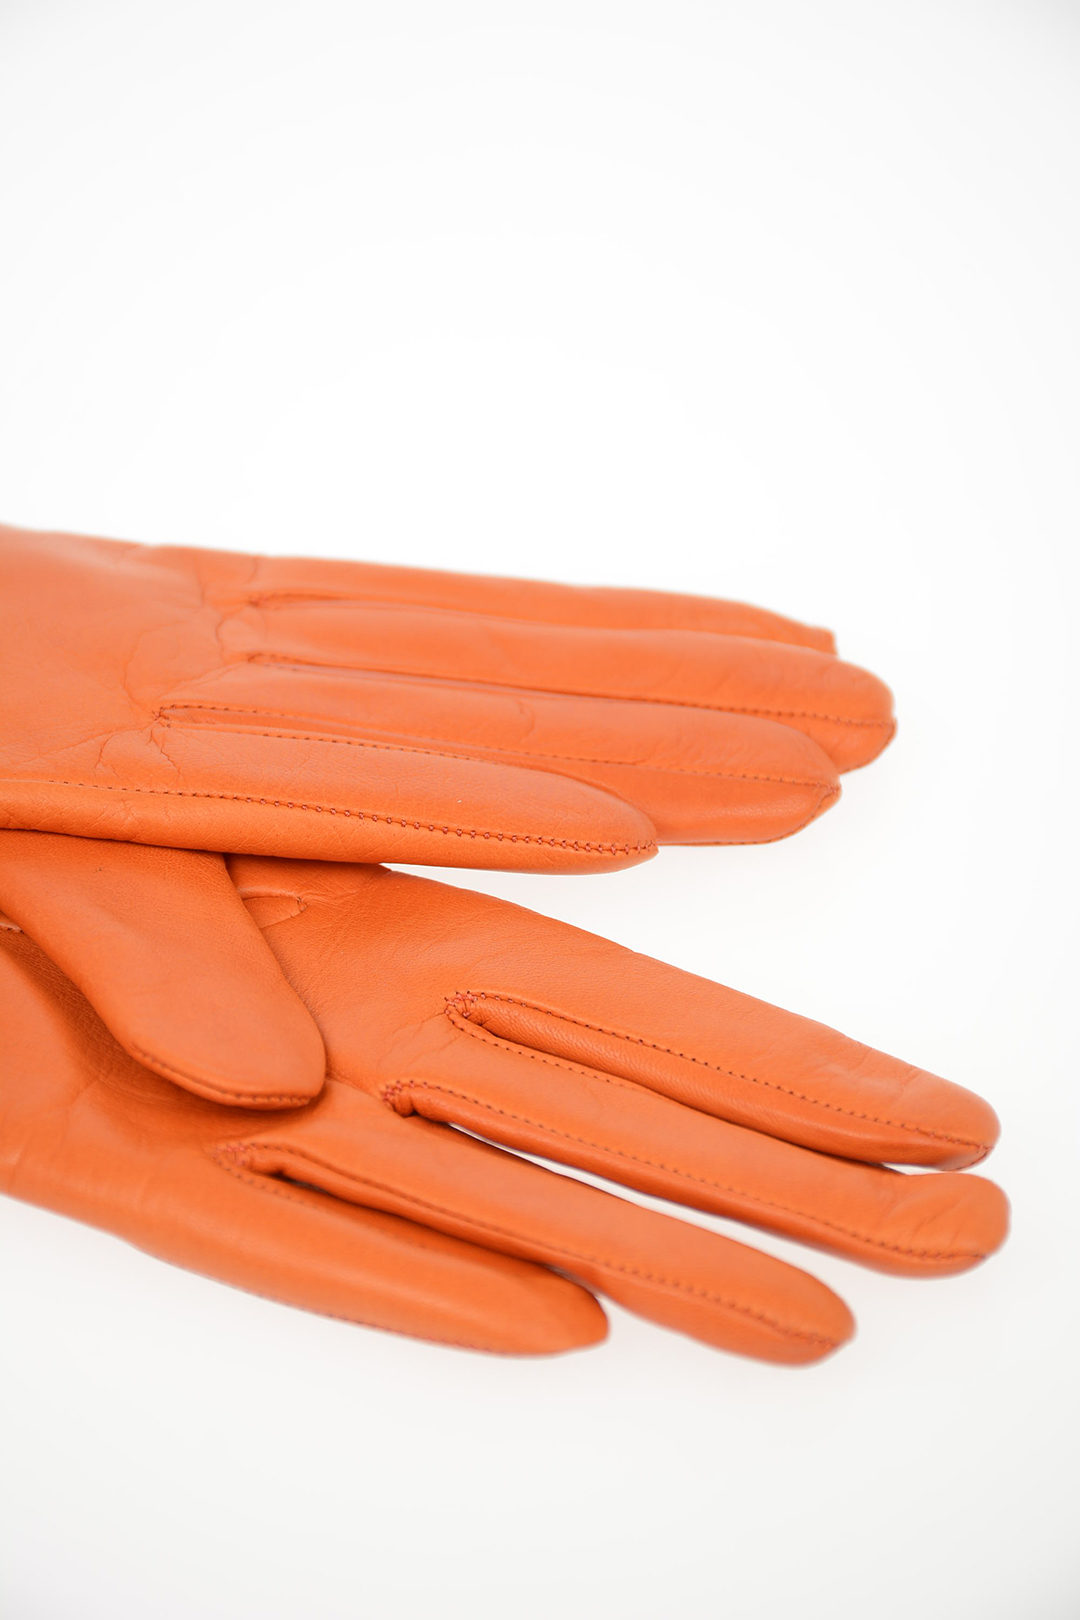 Sermoneta Gloves Leather Winter Gloves - Neutrals Winter Accessories,  Accessories - WSY20394